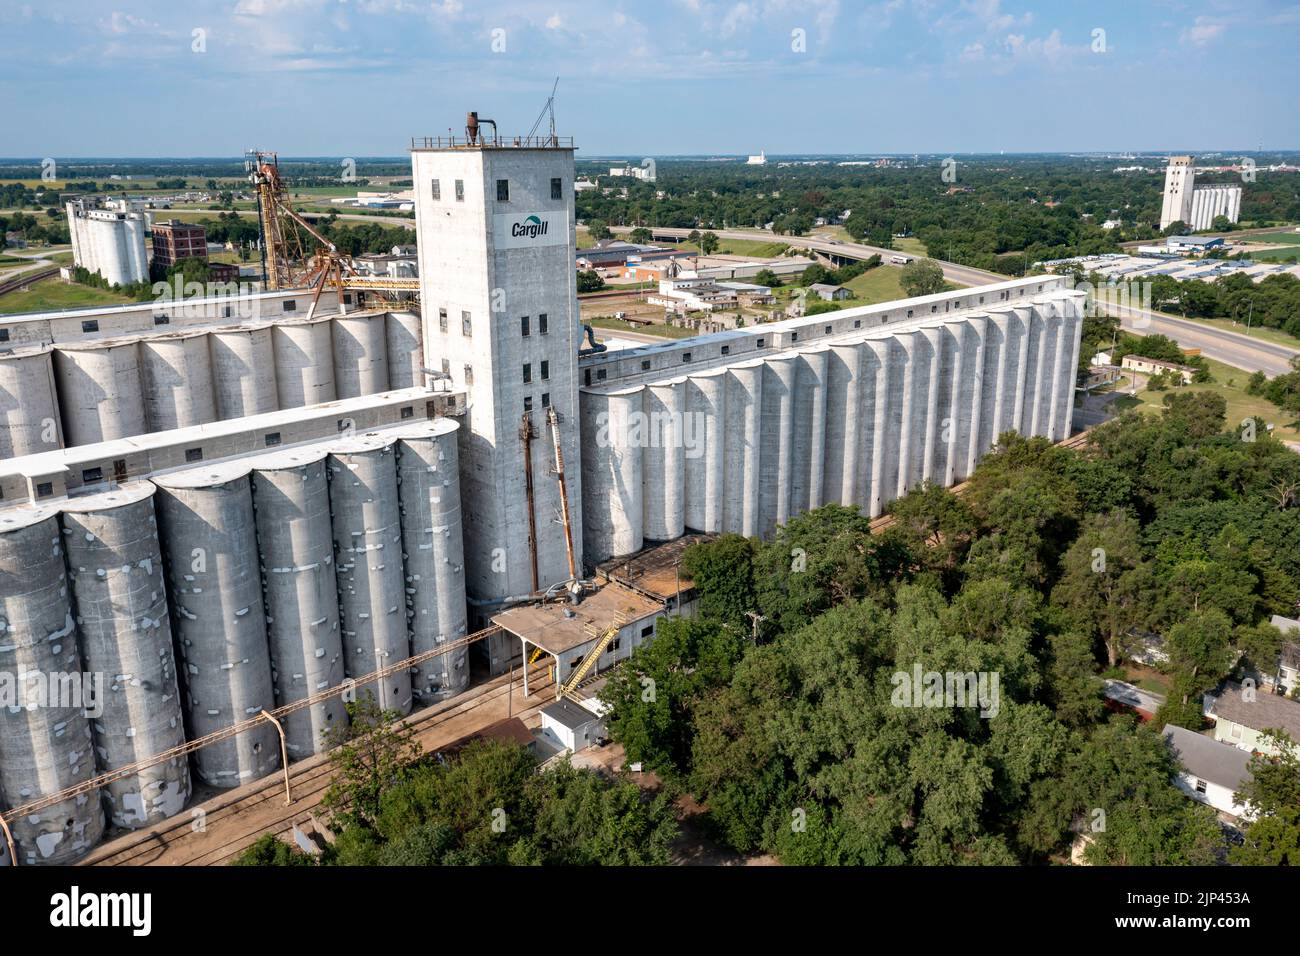 Hutchinson, Kansas - Un gran elevador de grano Cargill, uno de los muchos en la ciudad. Foto de stock